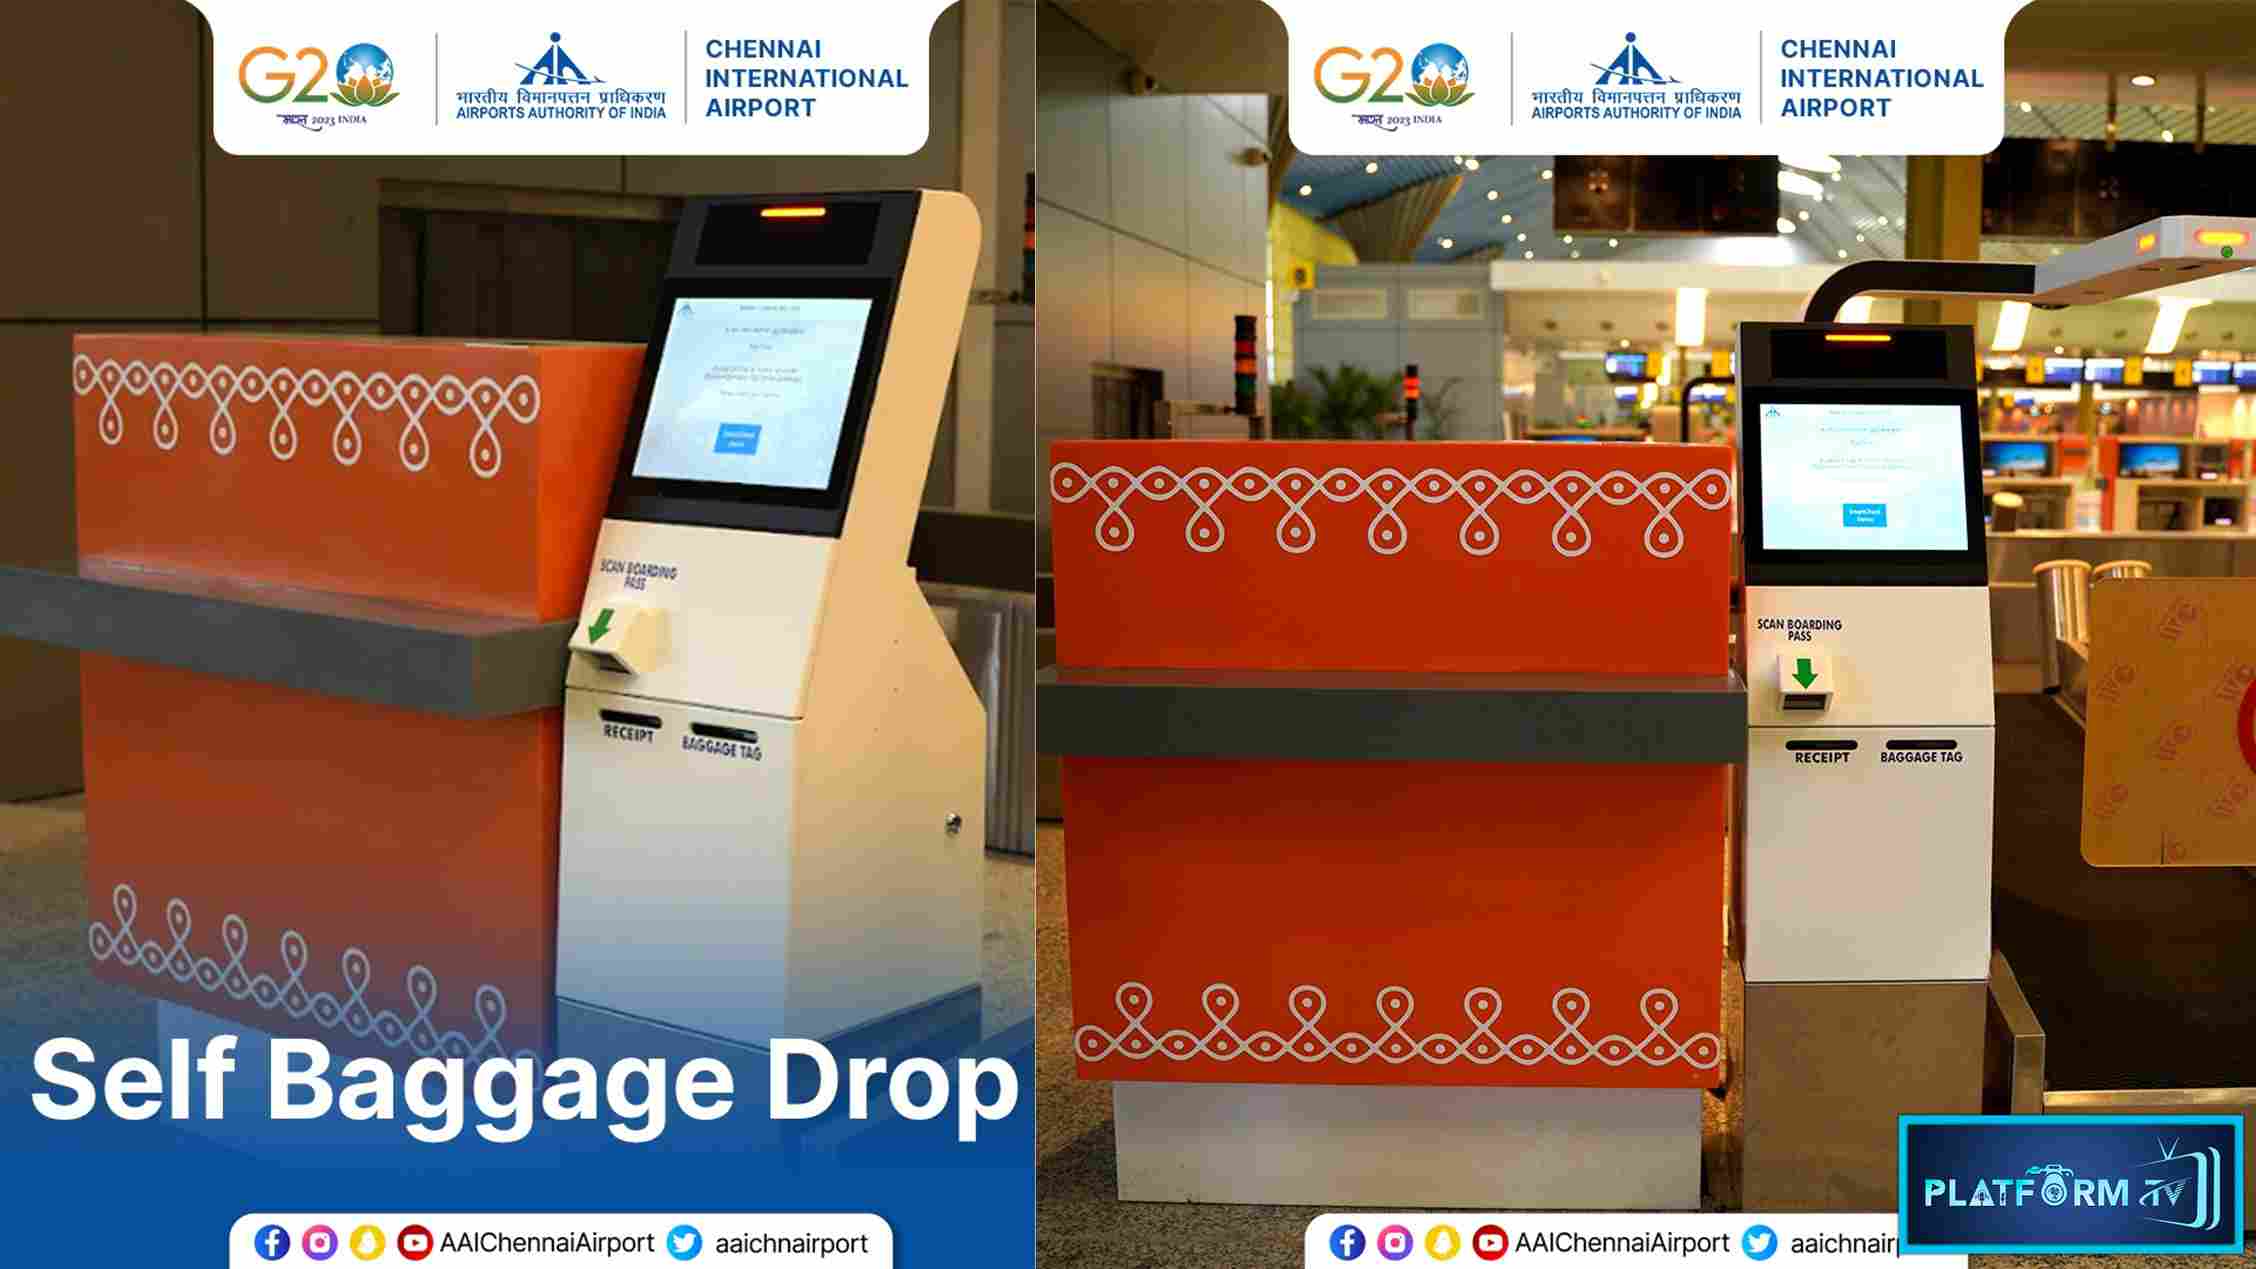 Self Baggage Drop Facility launch at Chennai Airport - Platform Tamil